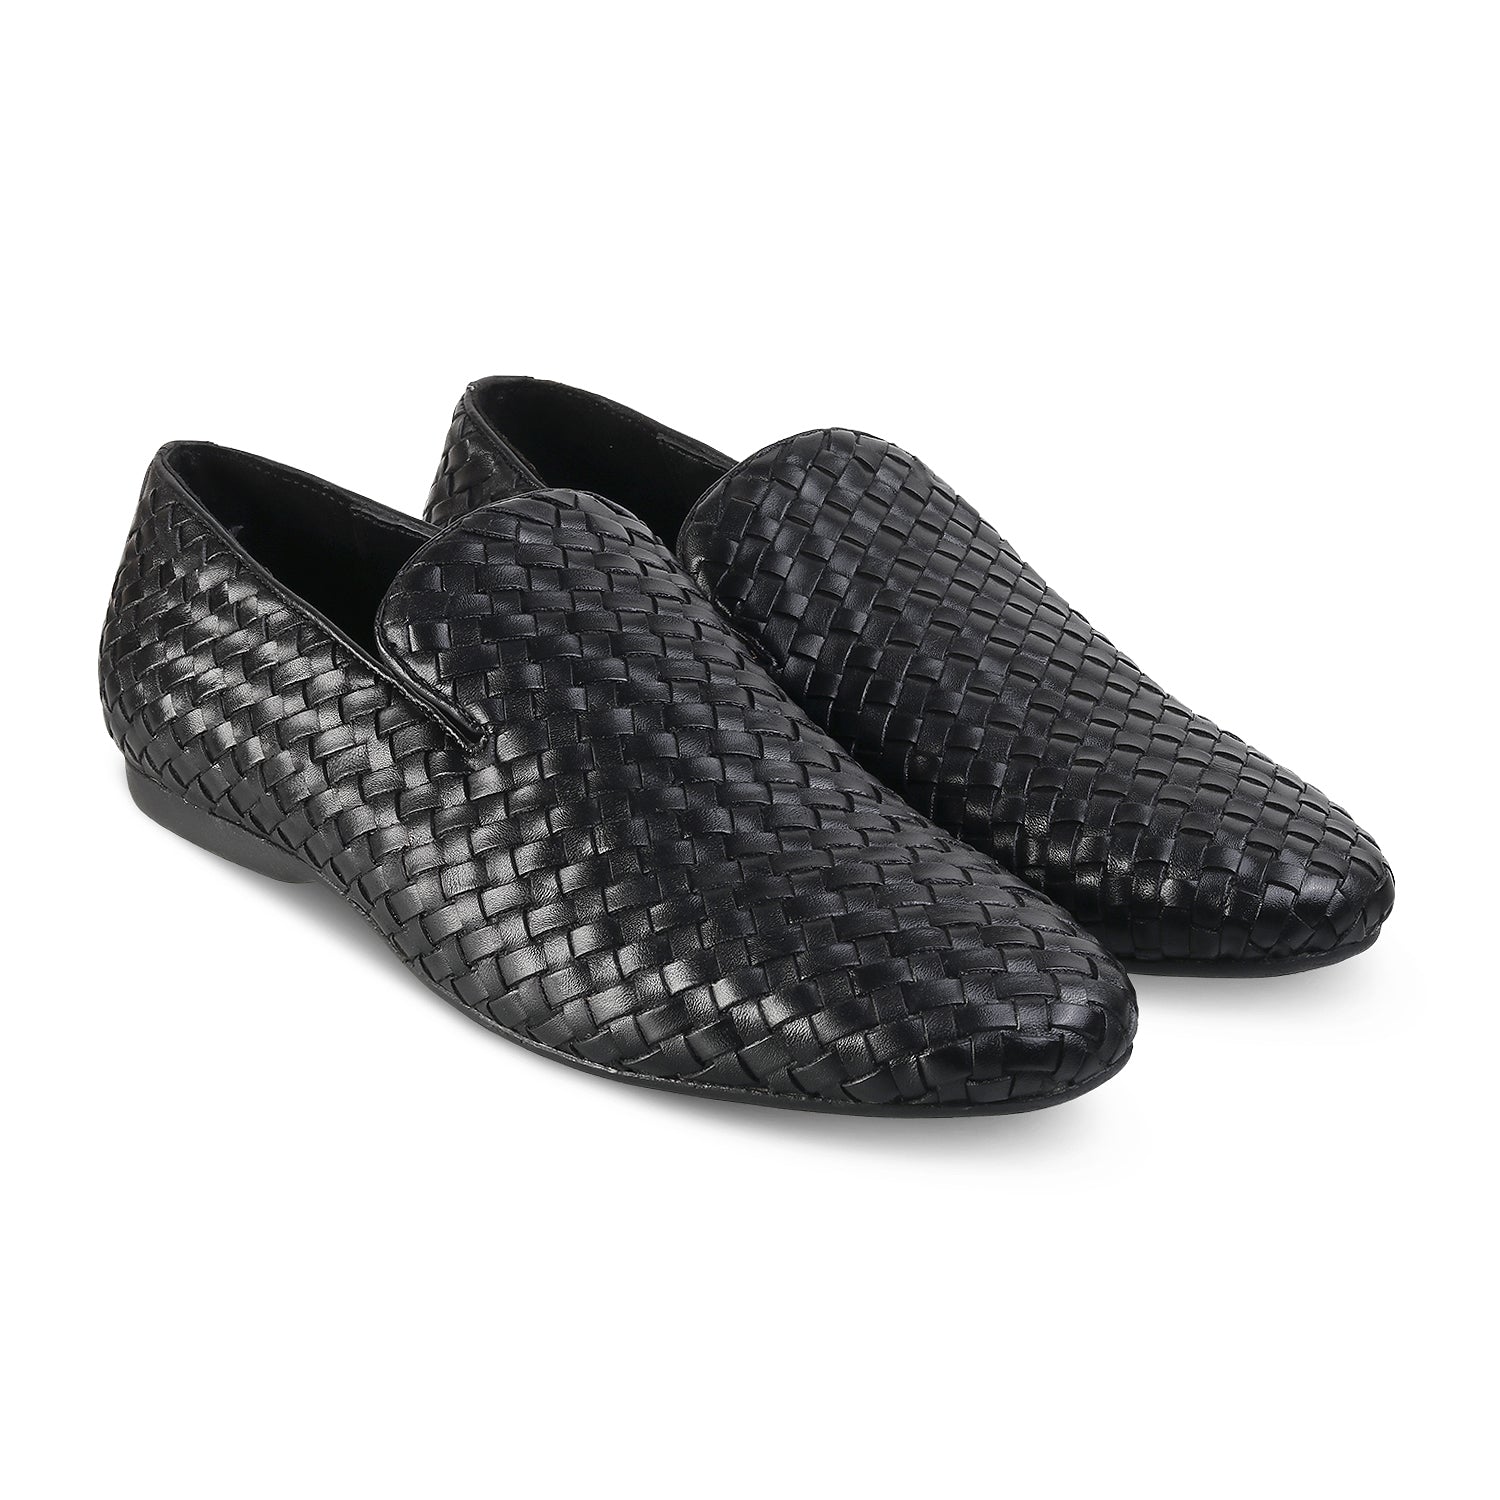 Black Handwoven Loafers For Men Online at Tresmode.com